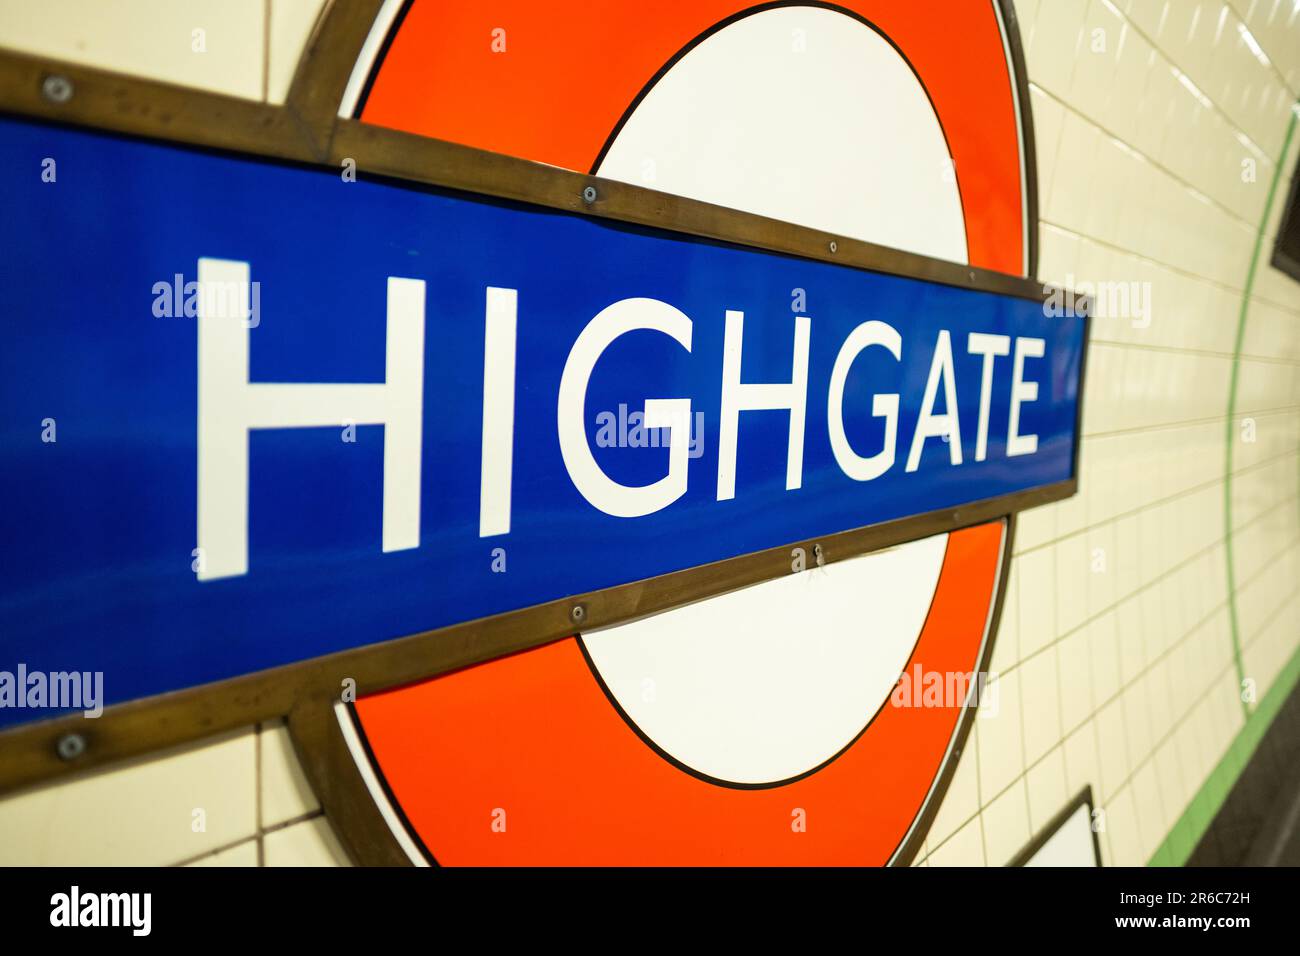 LONDRES - 21 MARS 2023 : Station de métro Highgate, une station de la Northern Line dans la région d'Islington, dans le nord de Londres Banque D'Images